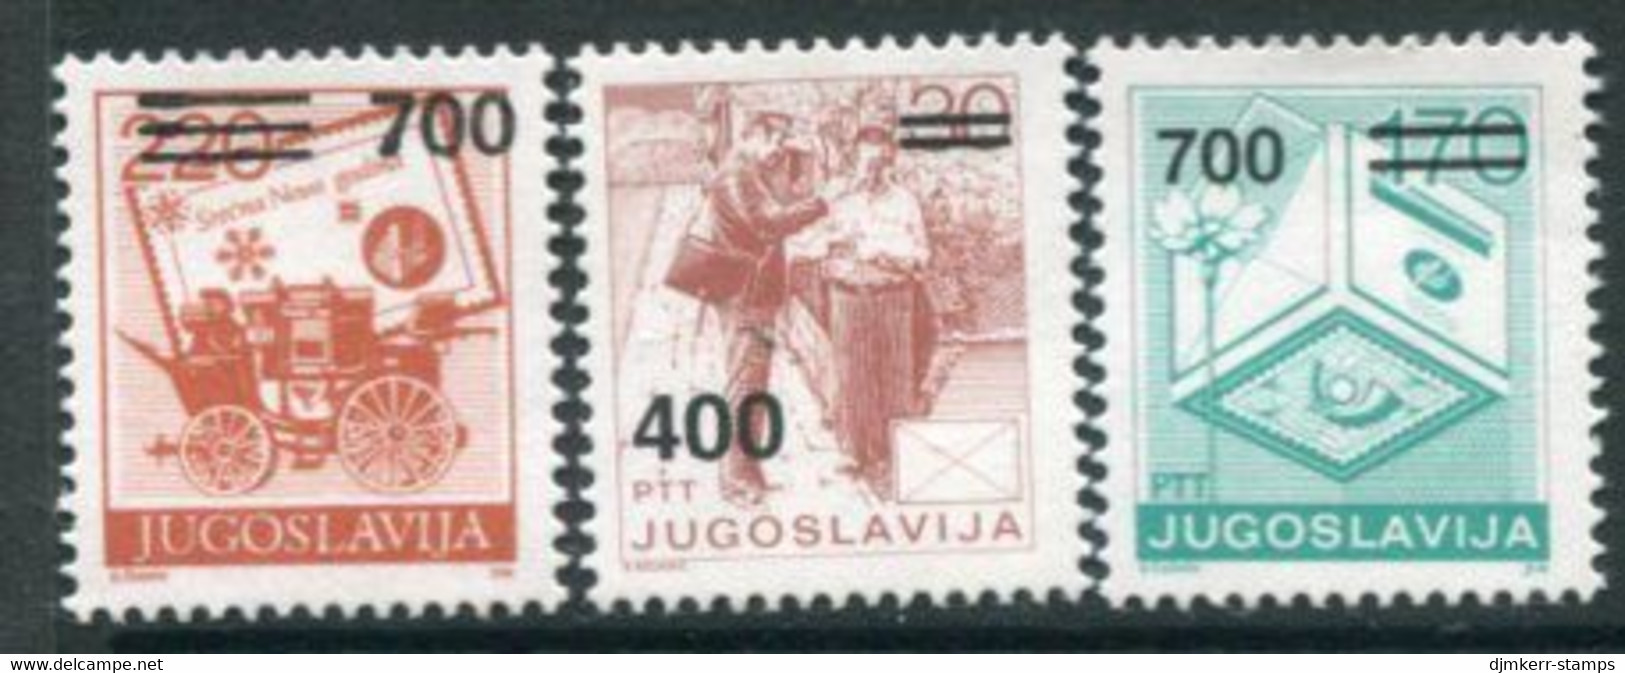 YUGOSLAVIA 1989 Surcharges 400 D, 700 D. (2) MNH / **.  Michel 2359, 2363-64 - Nuovi